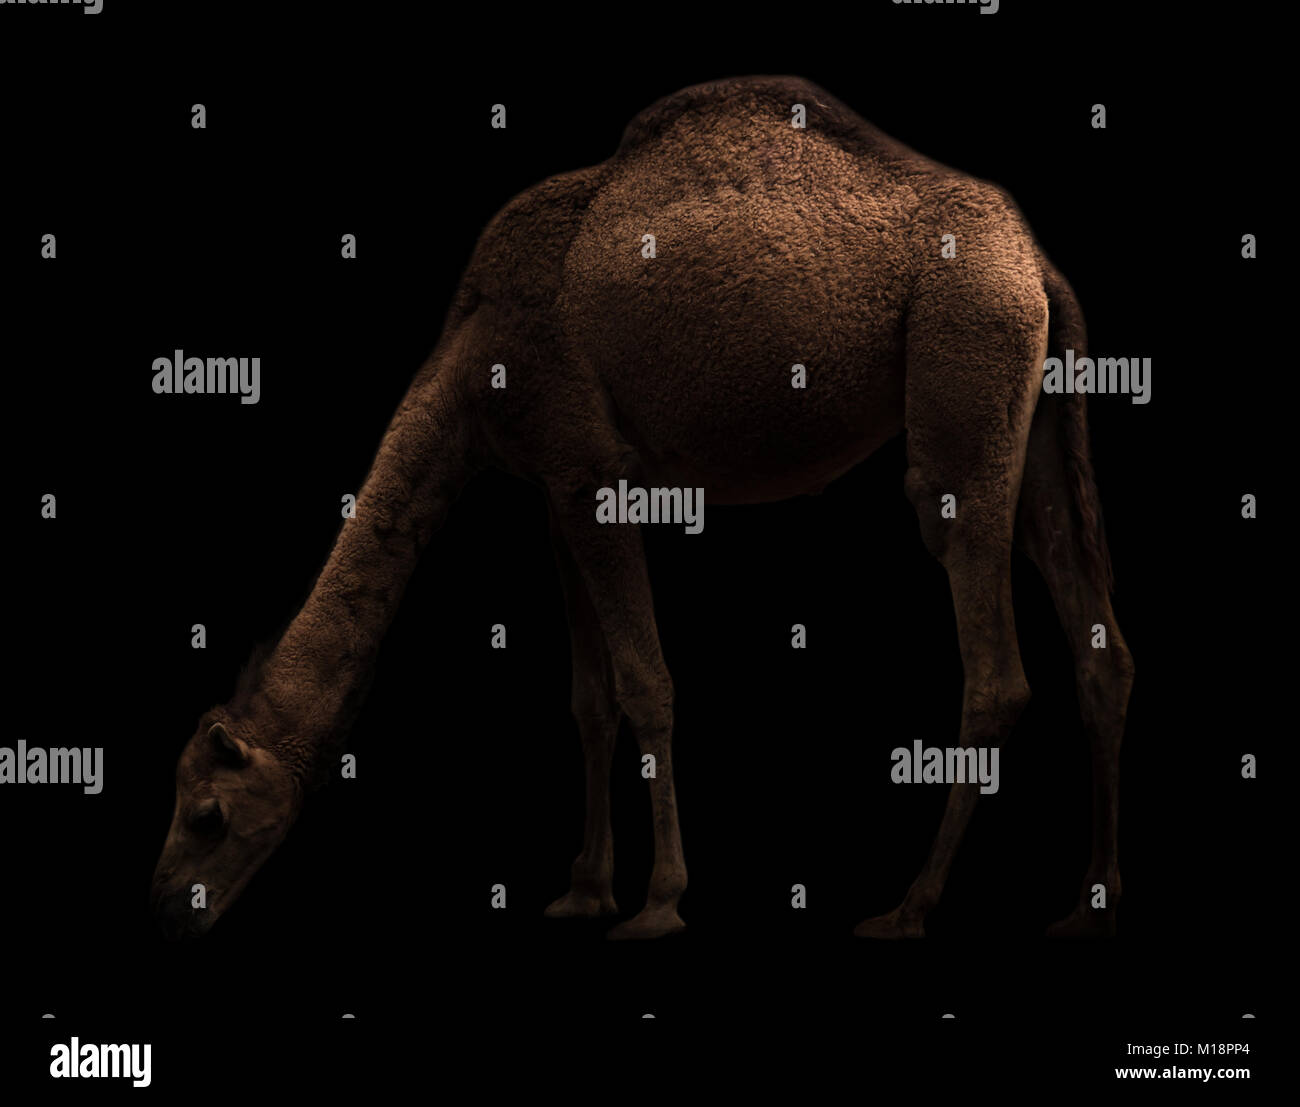 Le dromadaire ou chameau d'arabie debout dans l'obscurité Banque D'Images